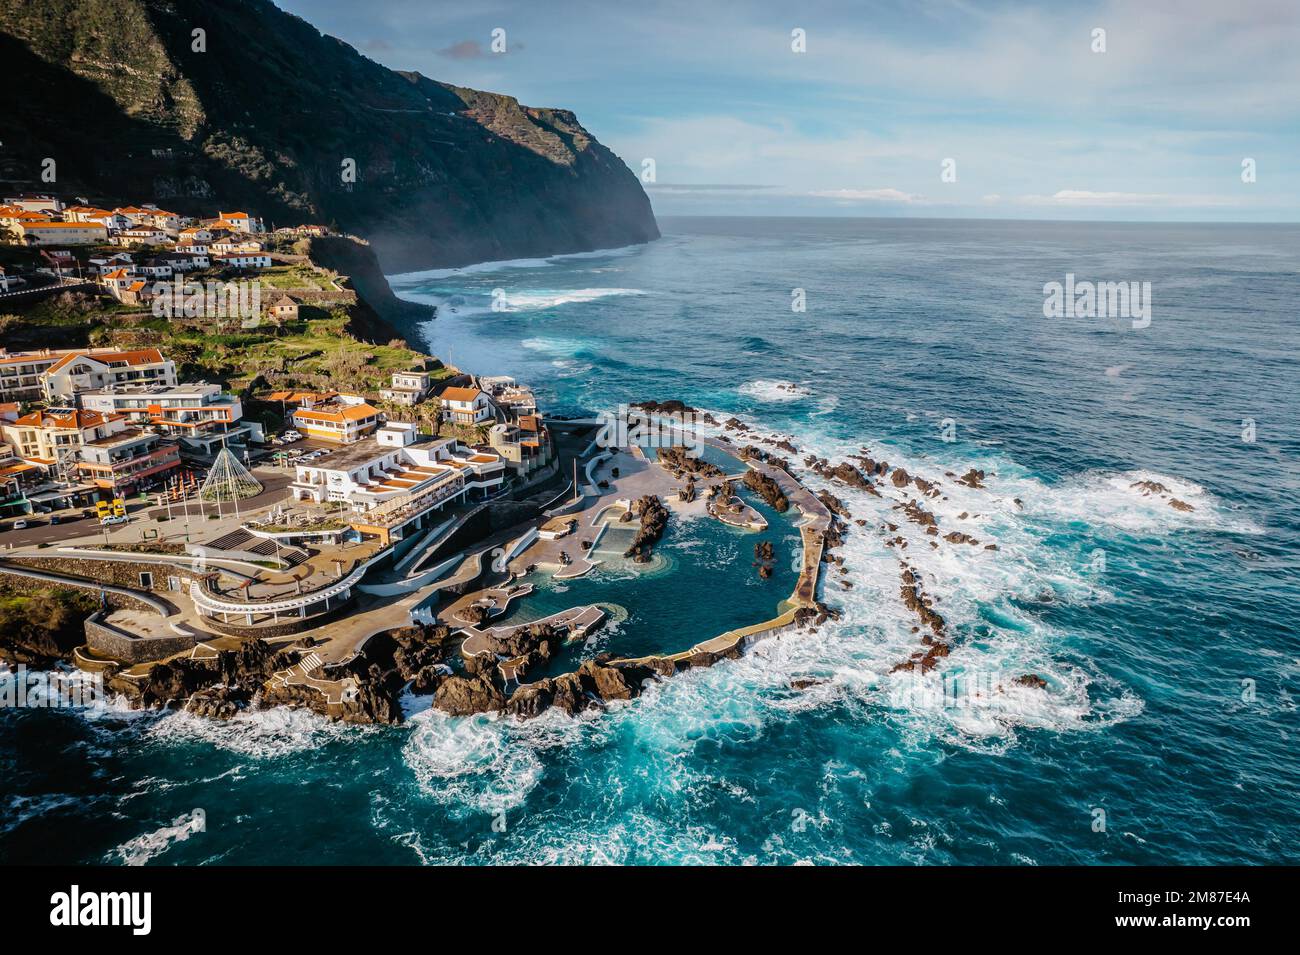 Vista aerea di Porto Moniz con piscine di lava vulcanica, Madeira. Piscine naturali di acqua salata create in formazioni laviche dall'oceano Atlantico. Gorgeous Foto Stock